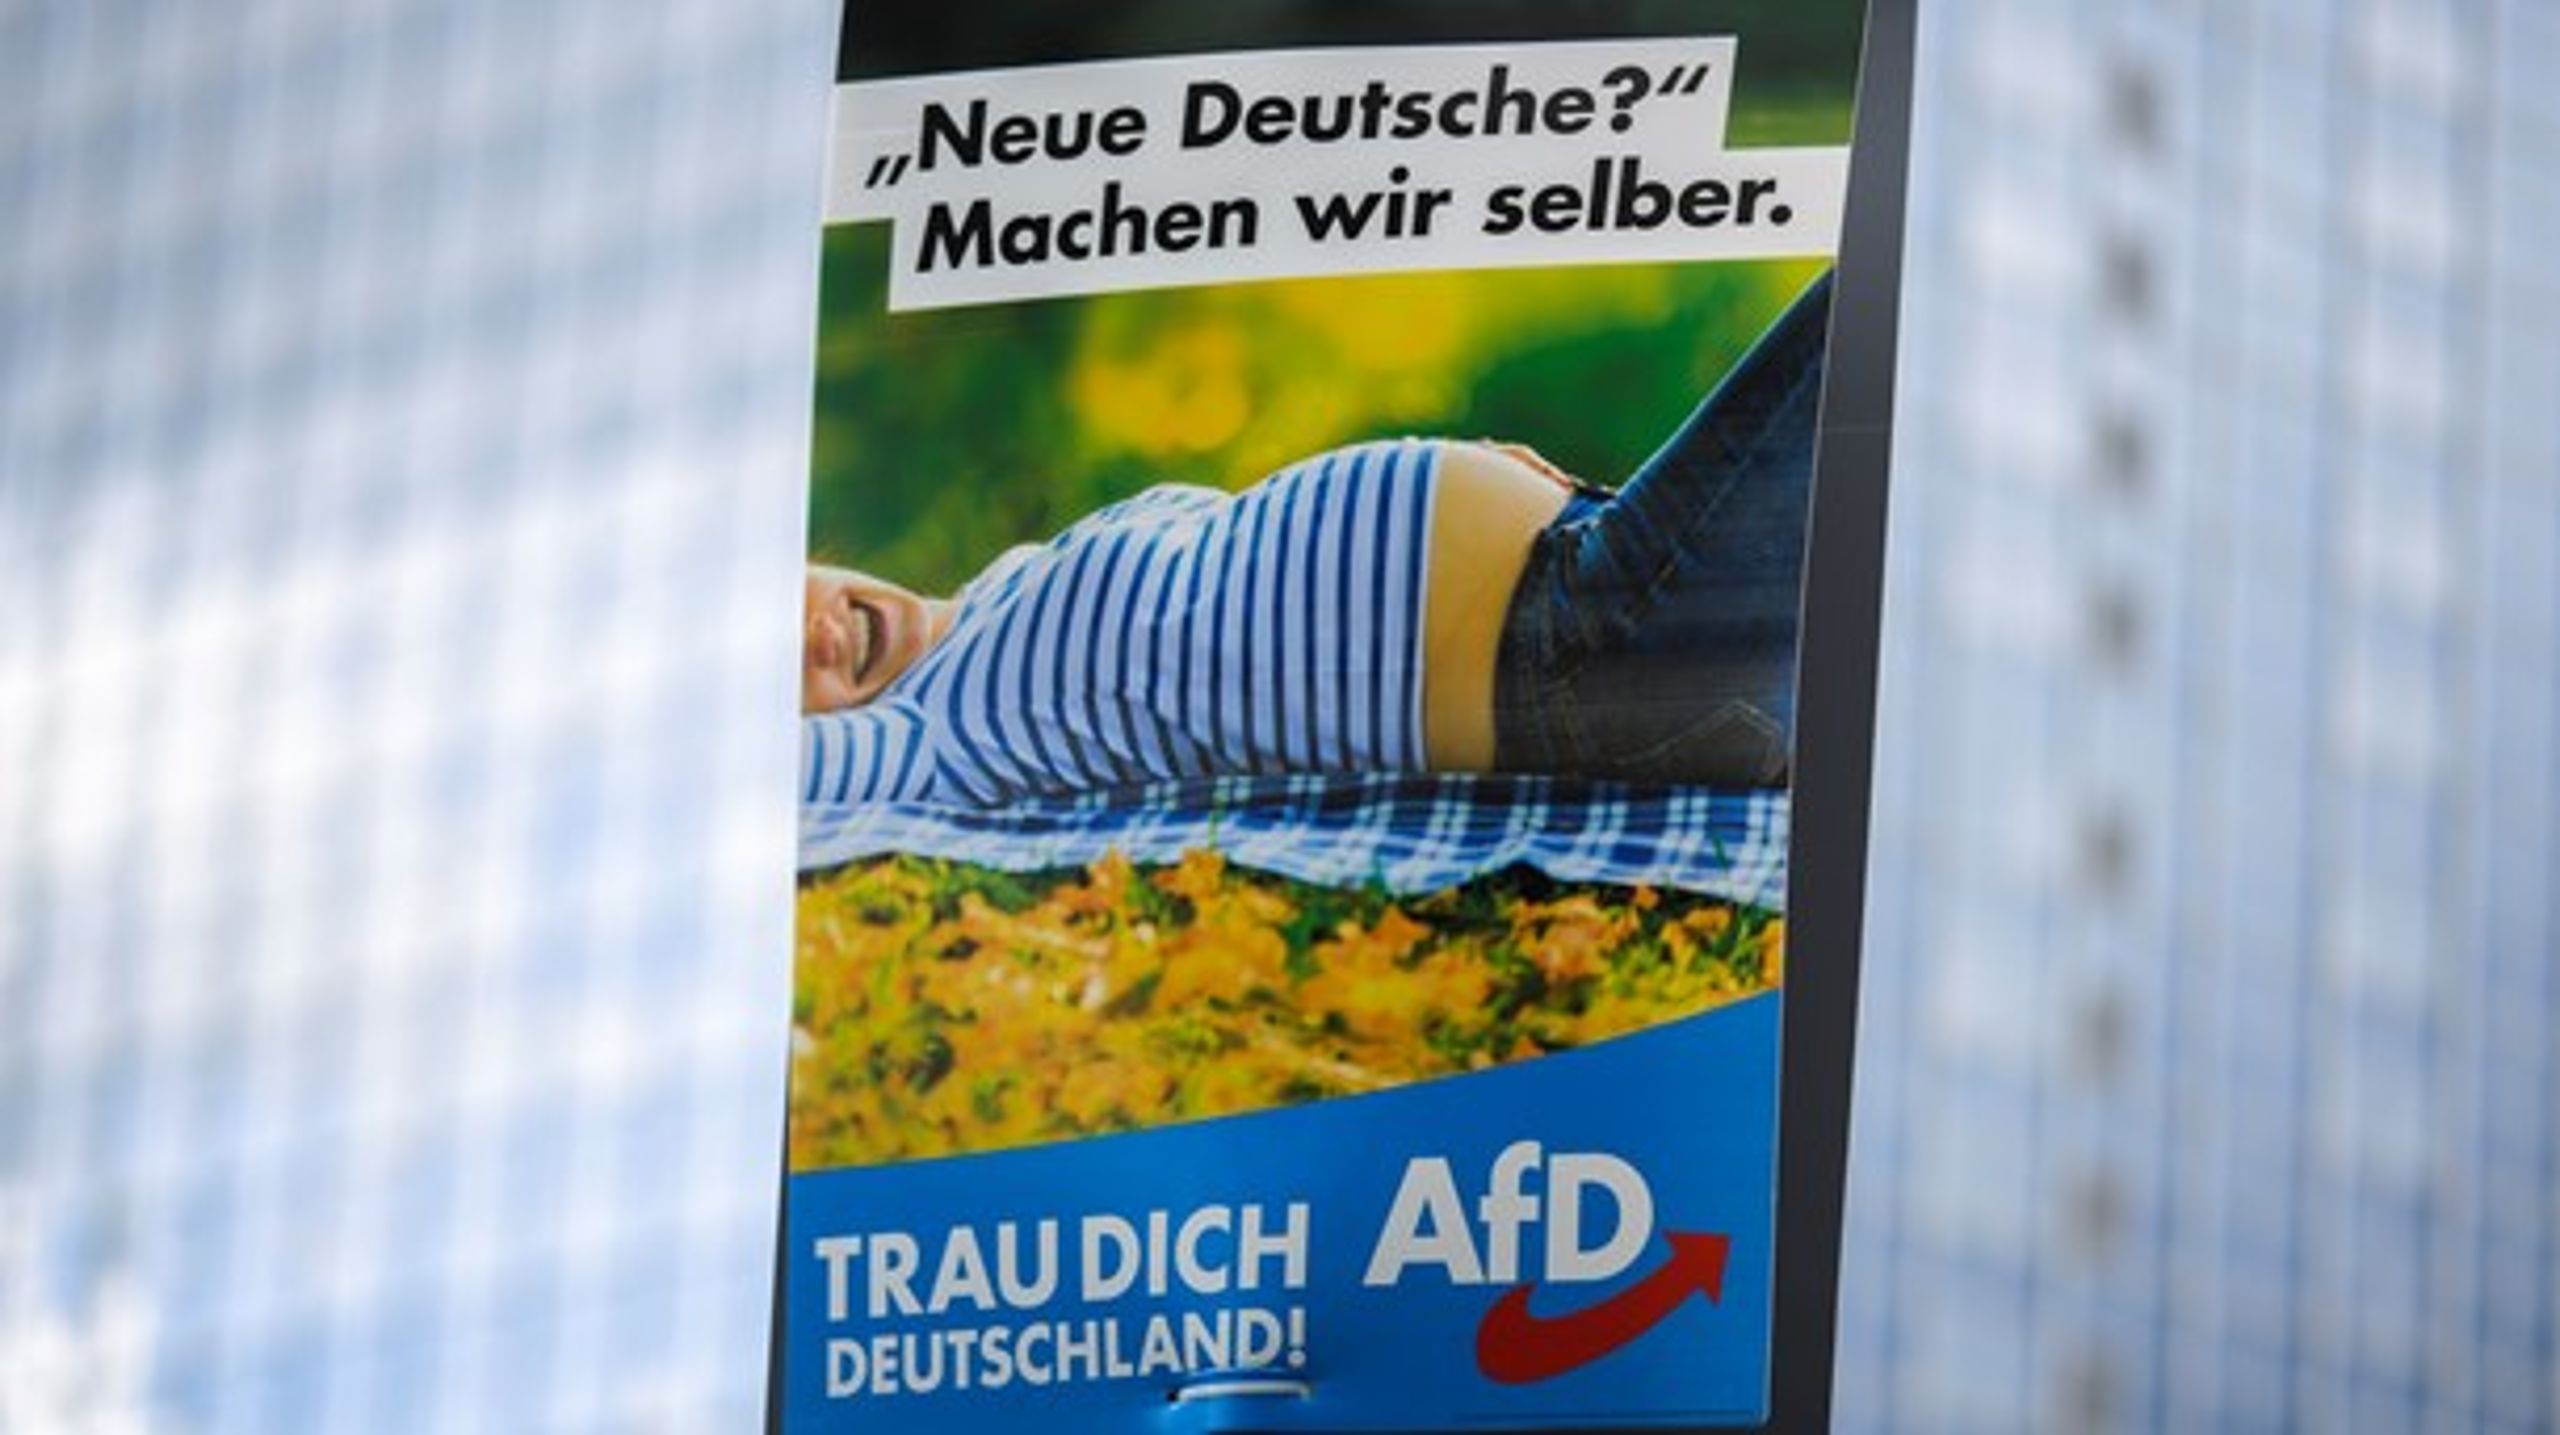 Alternative für Deutschland (AfD), kommer til at få konsekvenser for en ny tysk regering, skriver professor Per Øhrgaard.